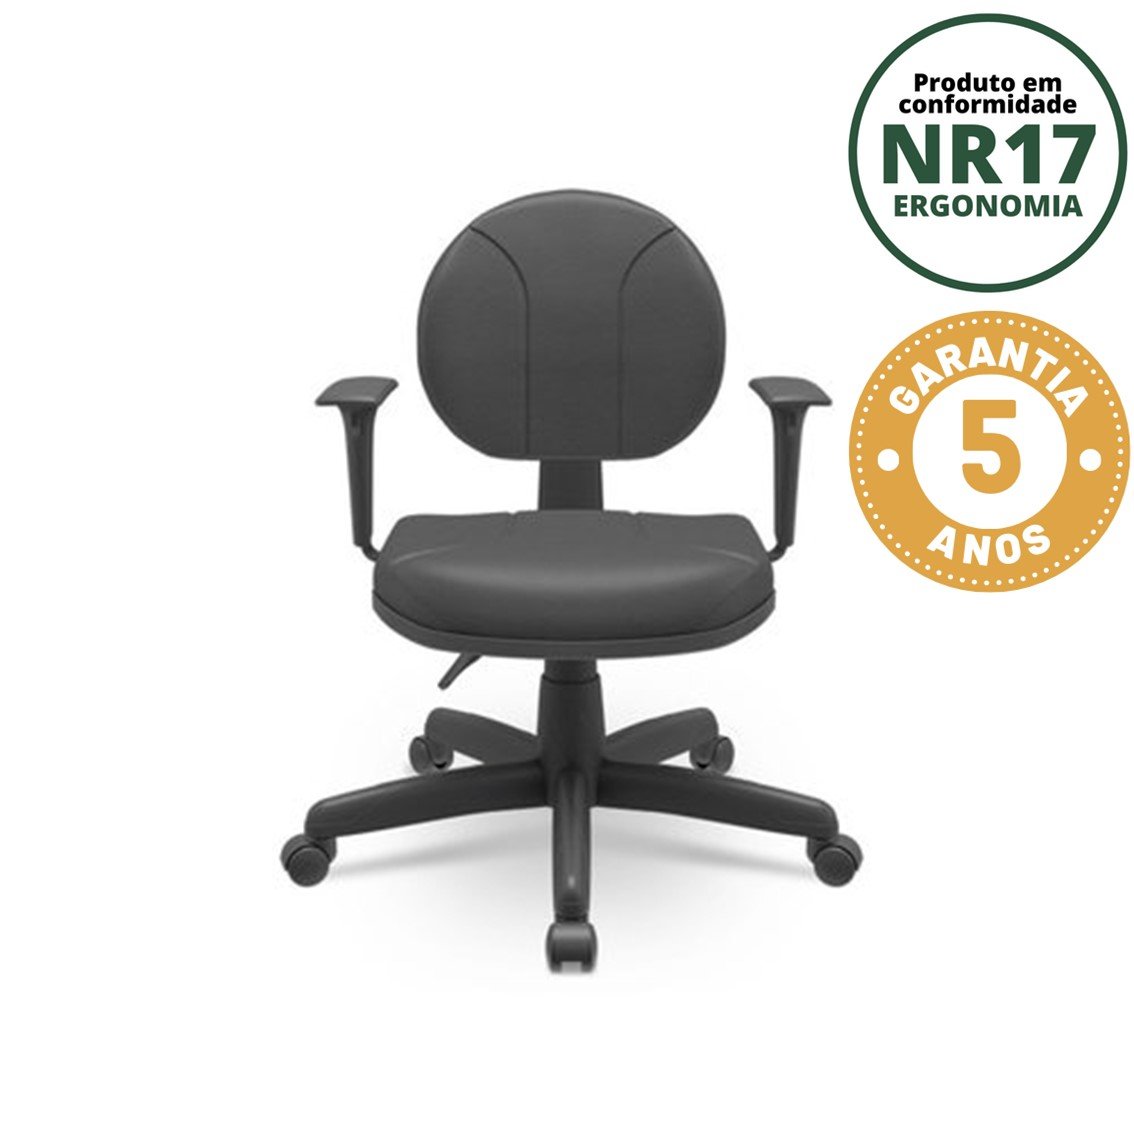 Cadeira para Escritório Ergonômica Secretária Backsystem Operativa NR17 Plaxmetal